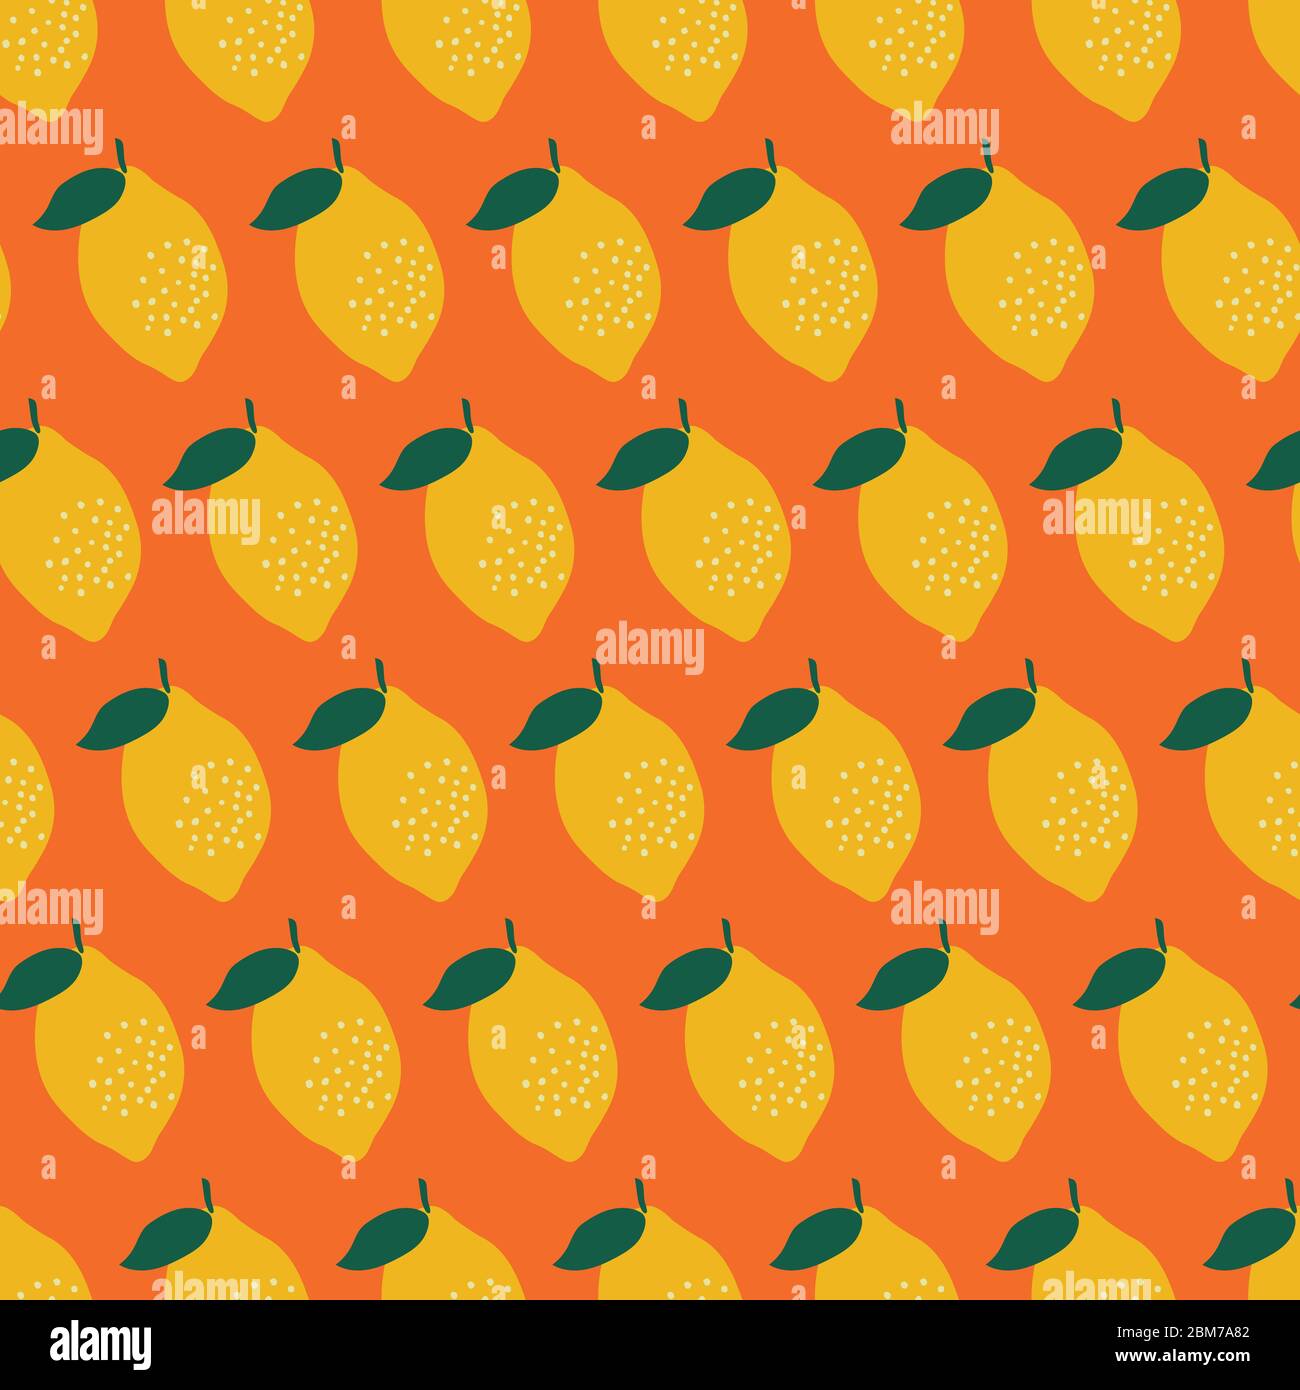 modèle sans couture rétro de style des années 70 avec citrons jaunes dessinés à la main sur fond orange vif. Illustration de Vecteur